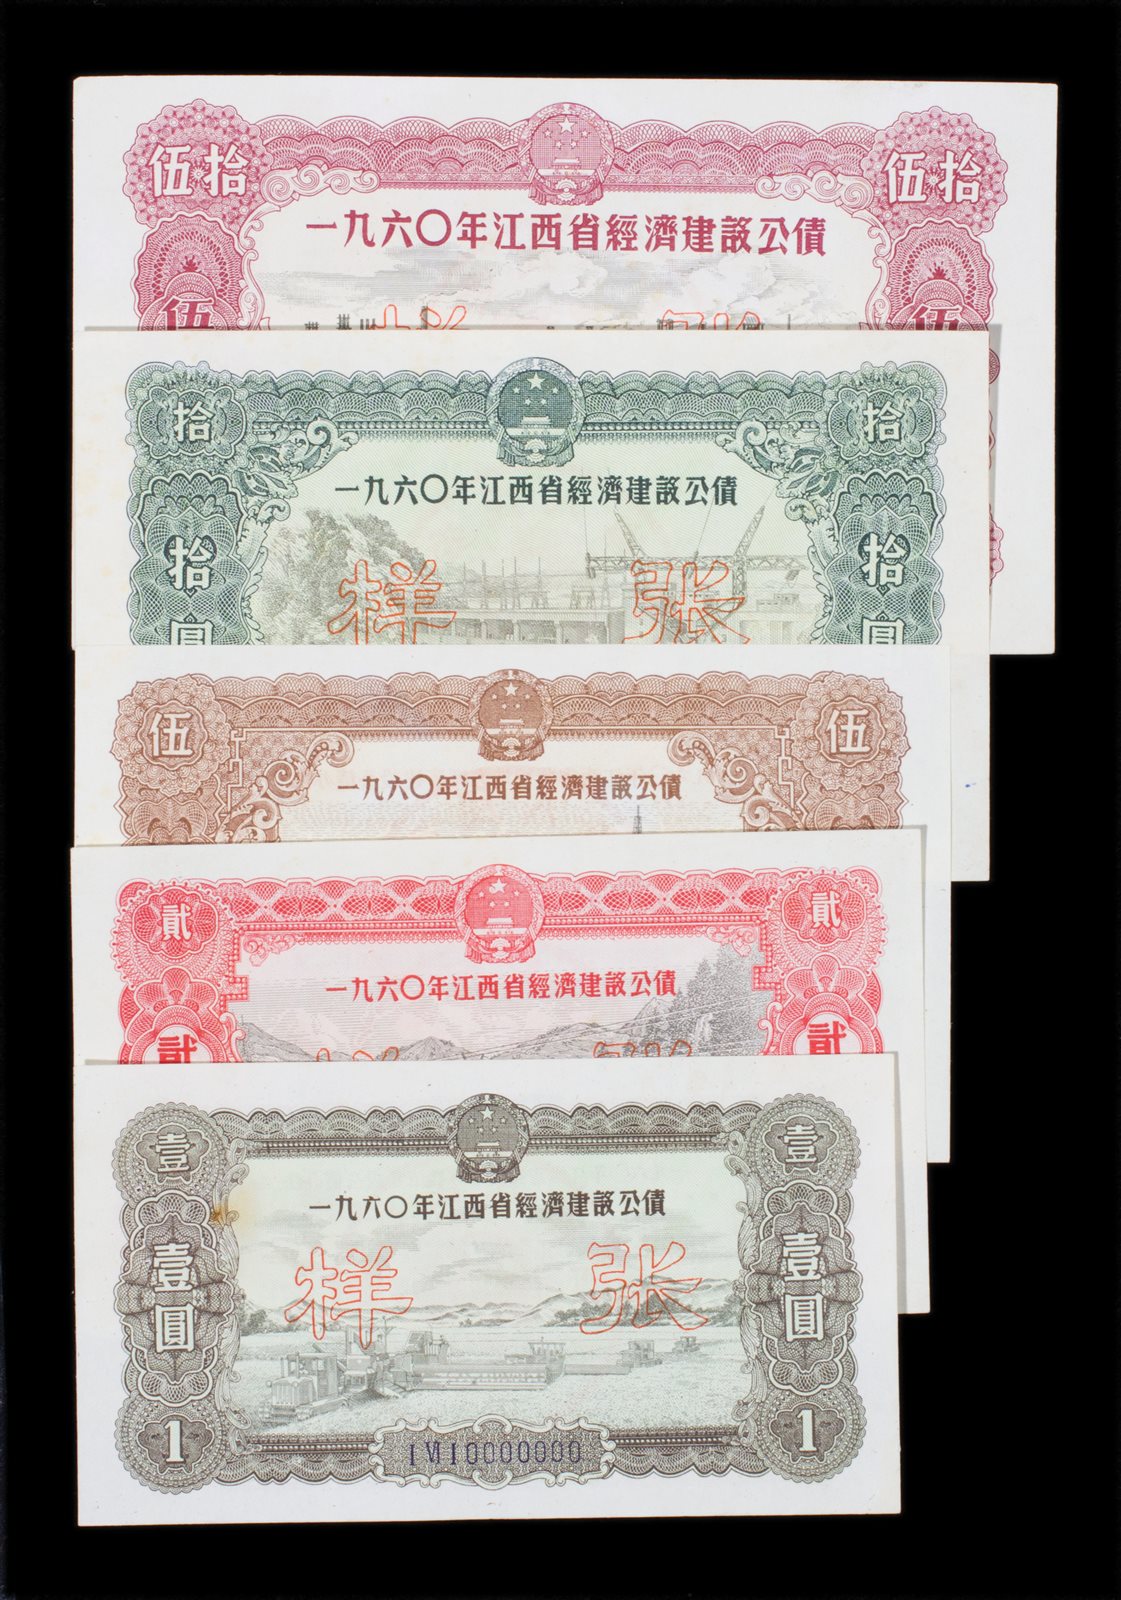 1960年江西省竞技建设公债样票一套五枚